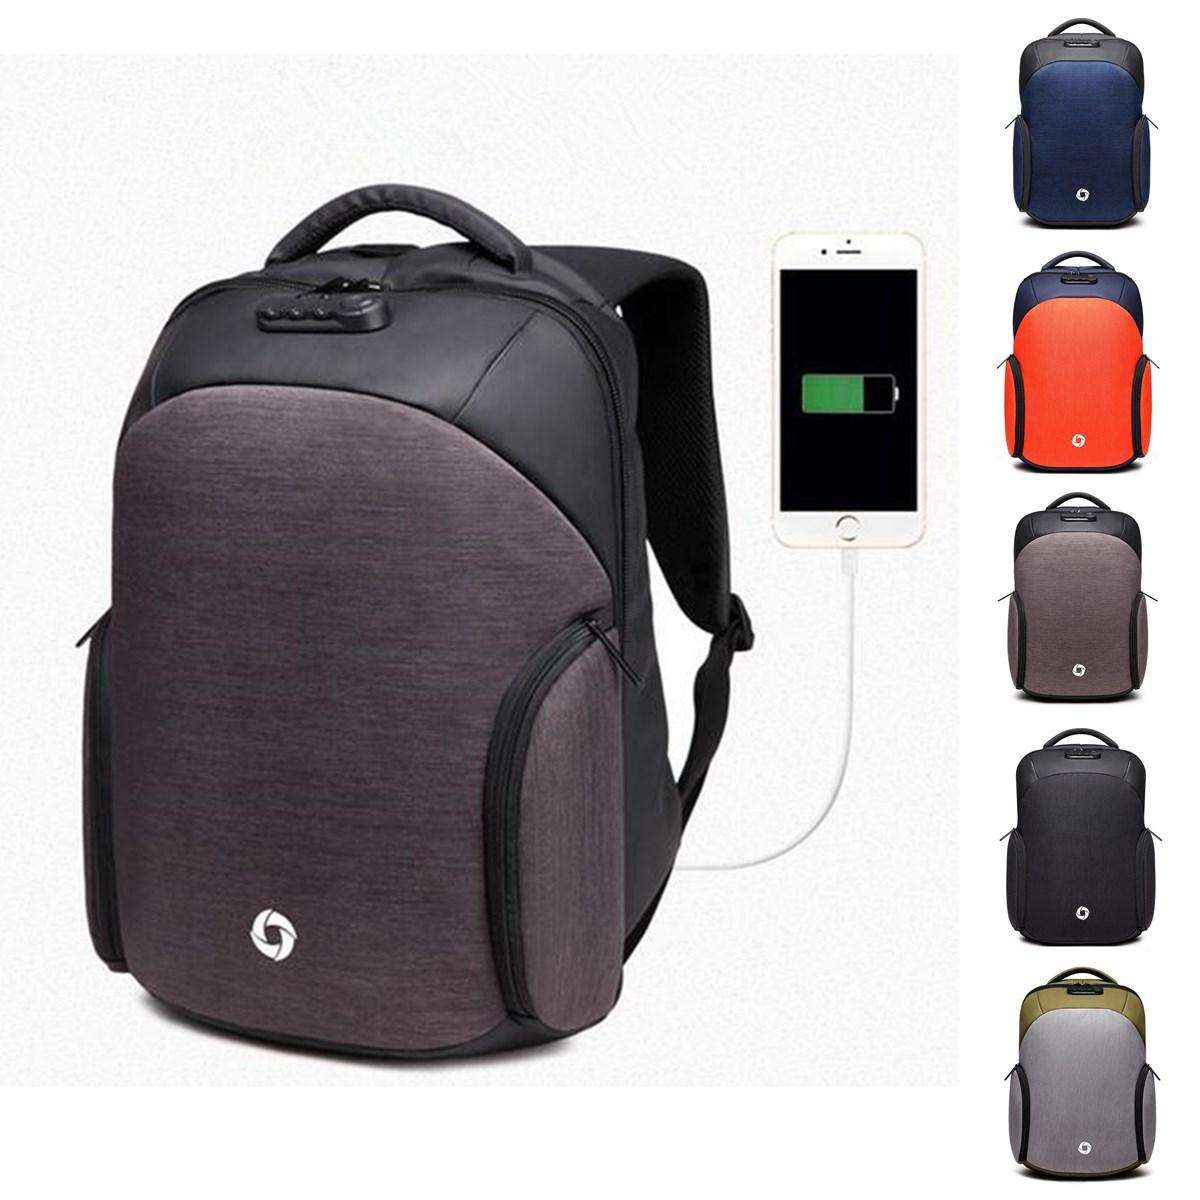  USB-Lade-Anti-Diebstahl-Rucksack Laptop Herren Rucksäcke Outdoor-Reisen Business Bag Schule Taschen